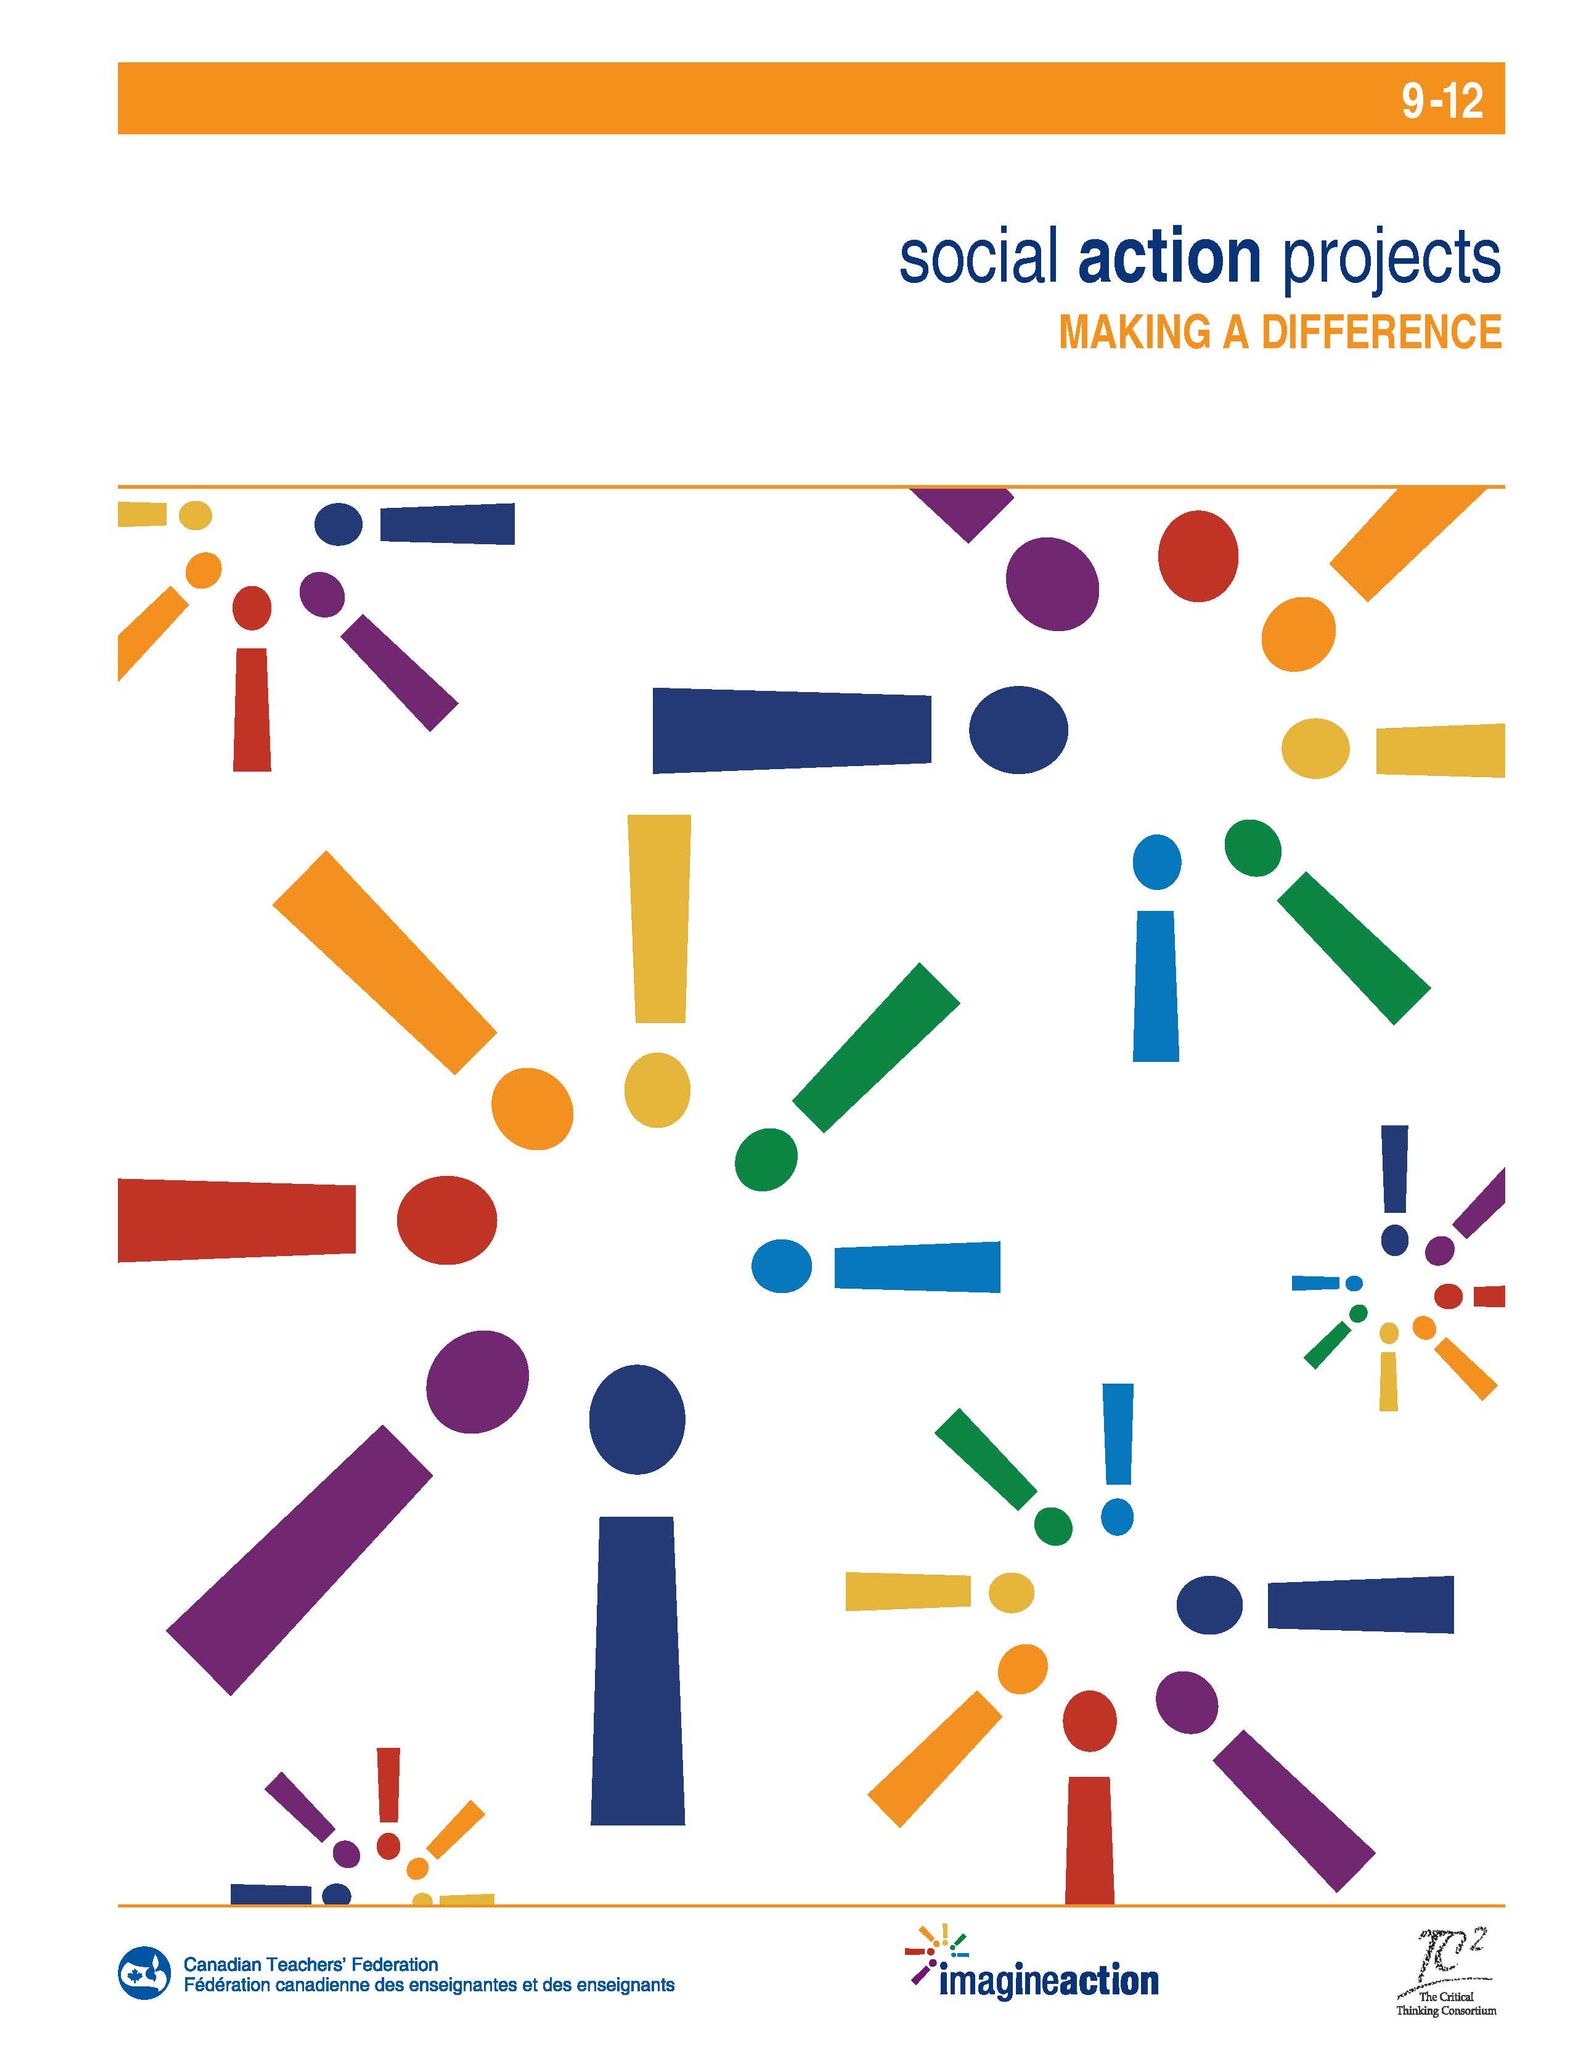 Projets d’action sociale – Faire plus ensemble